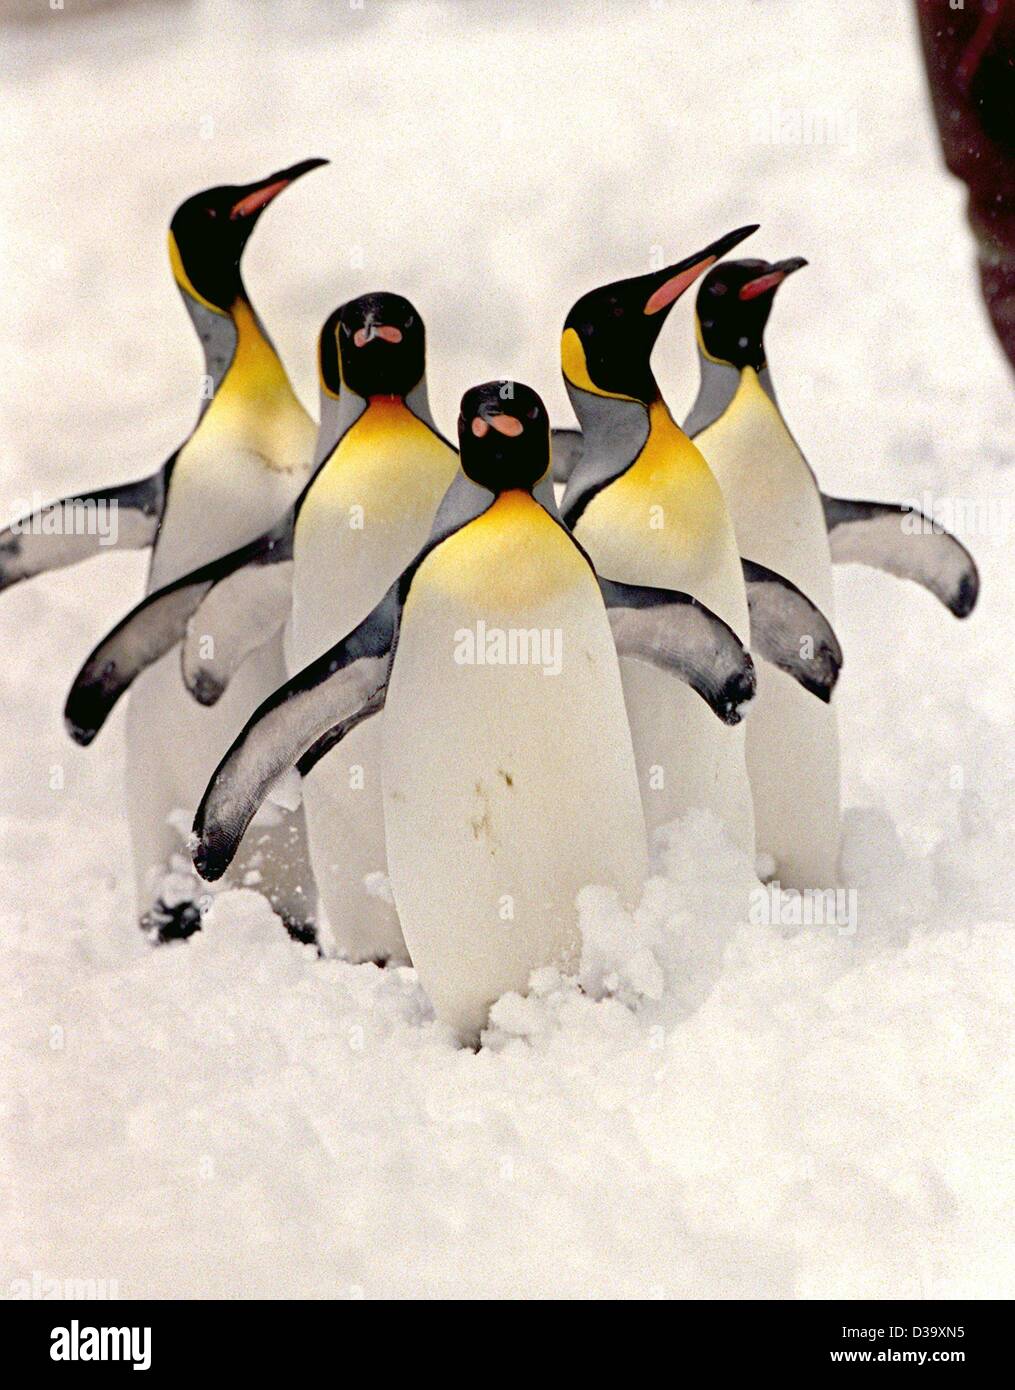 (Dpa) - Cinco pingüinos rey disfruta de la nieve en Munich's Zoo Hellabrunn el 23.11.1999. El frío invierno obtiene en Alemania más que sentirse como en casa. Foto de stock